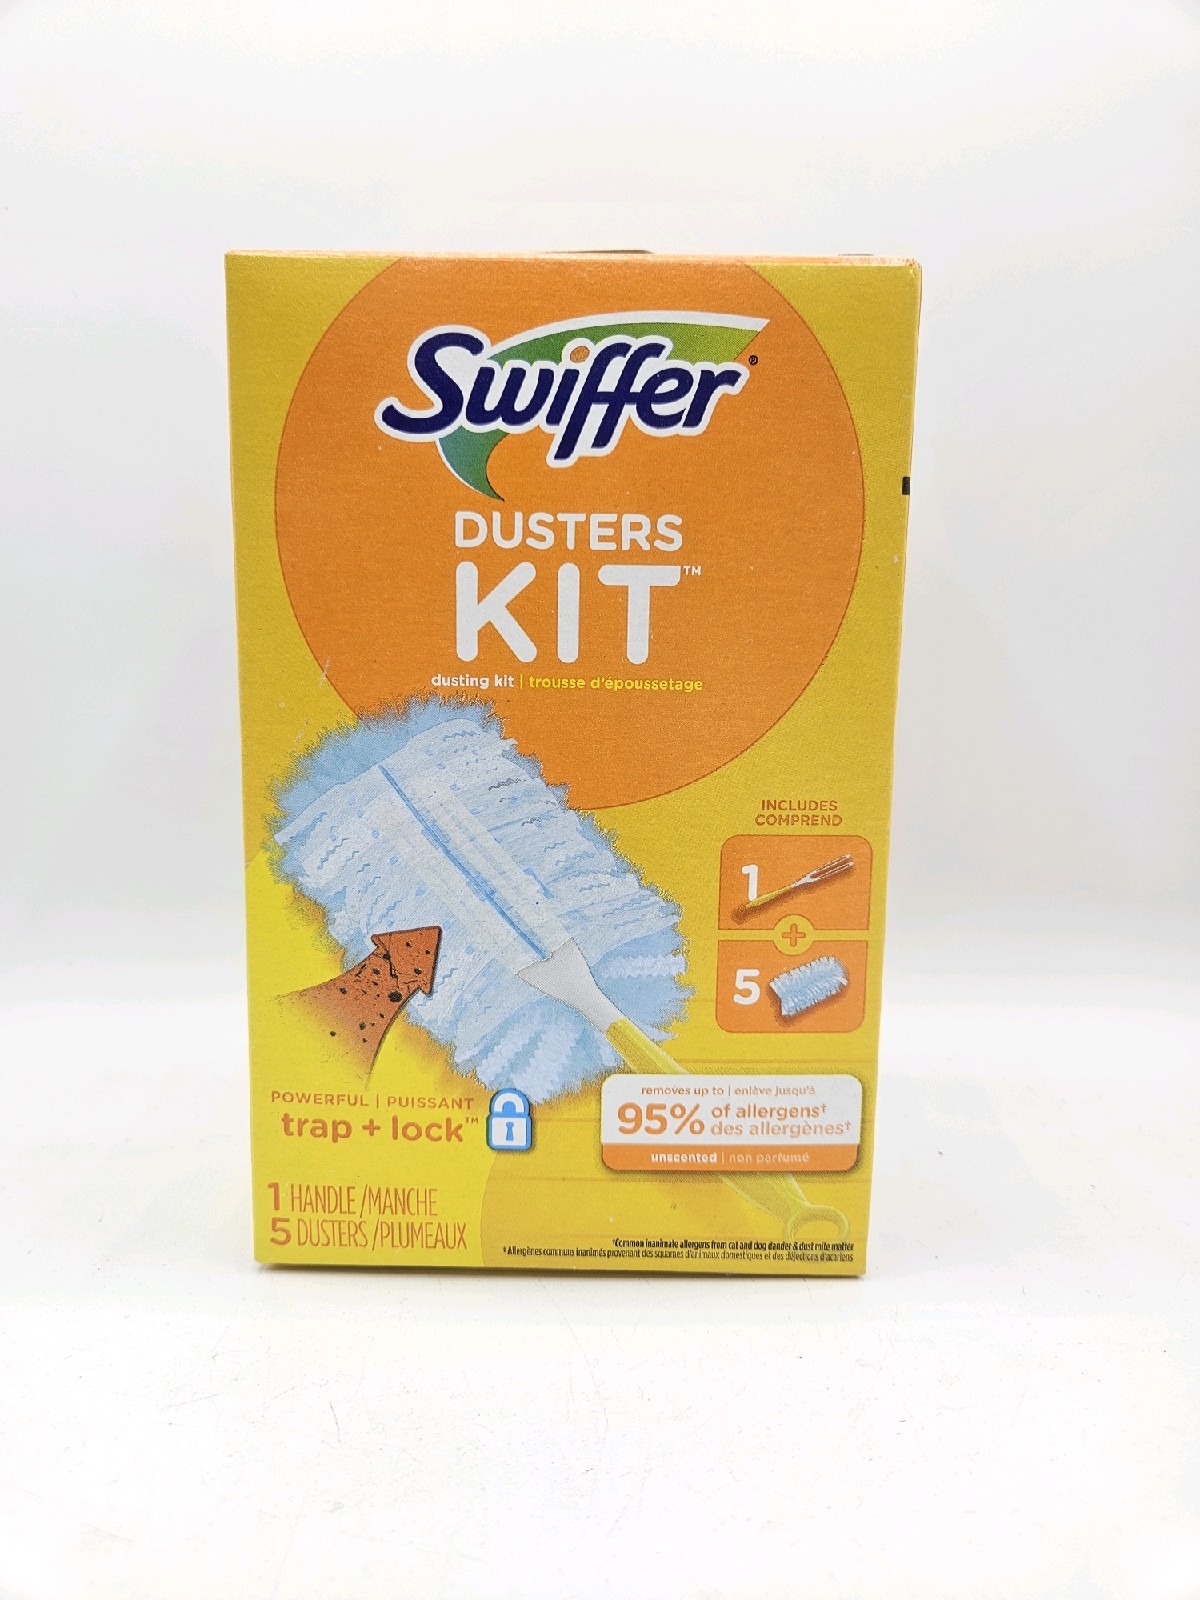 Swiffer Duster Kit